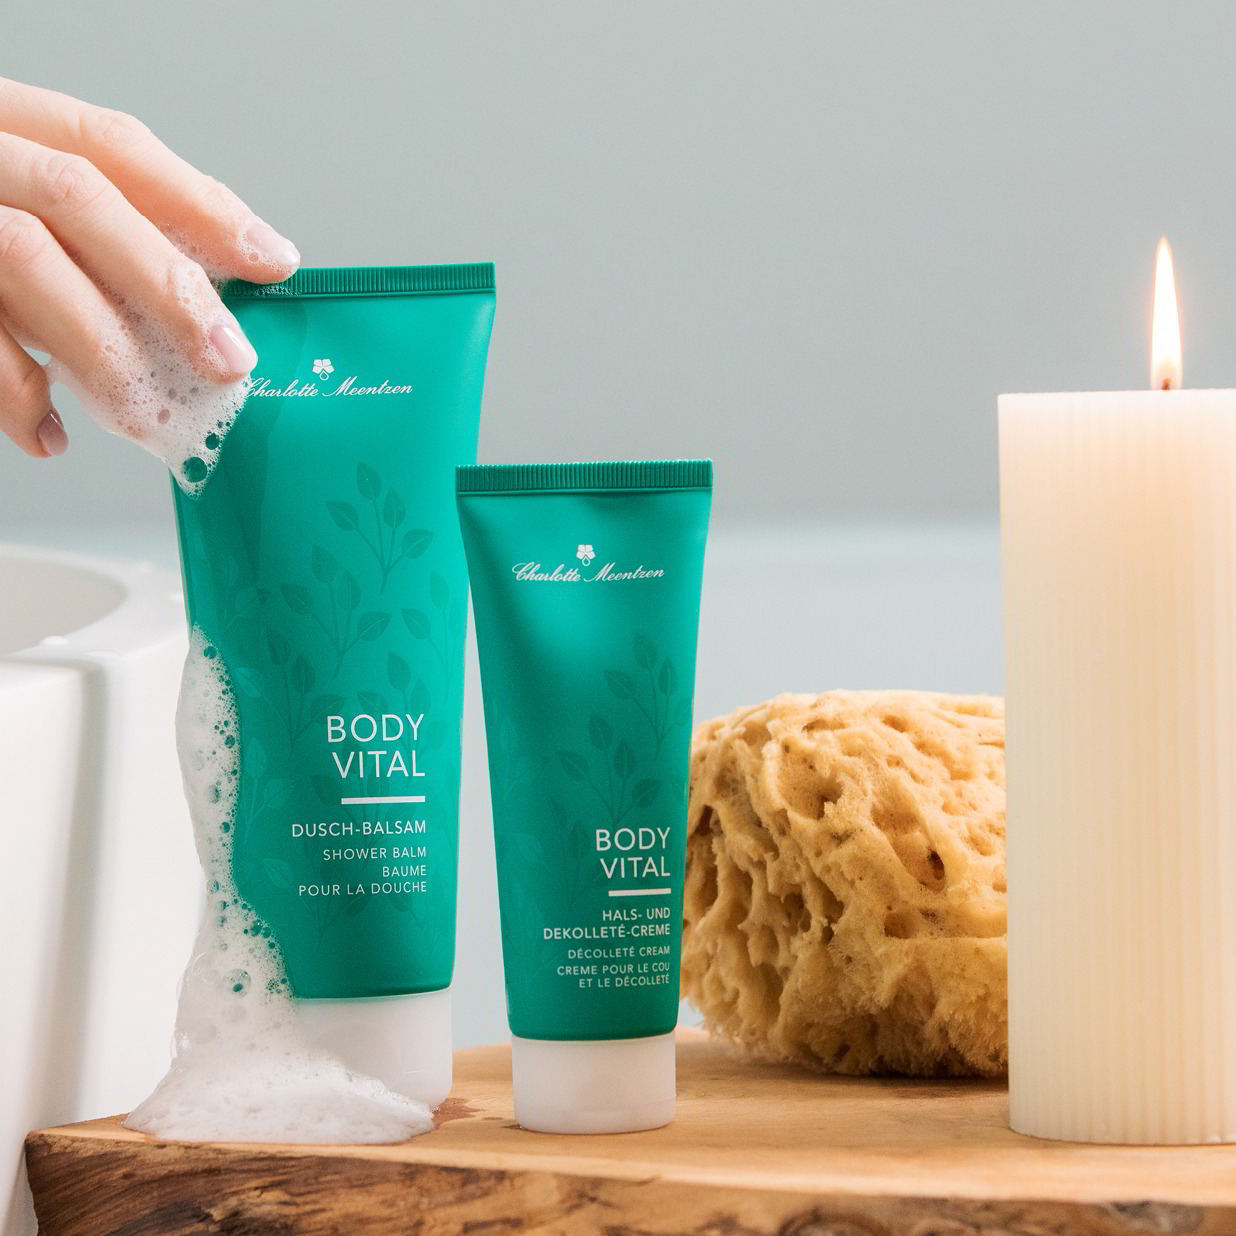 Zwei Body Vital Produkte neben Badewanne und Kerze mit Schaumhand